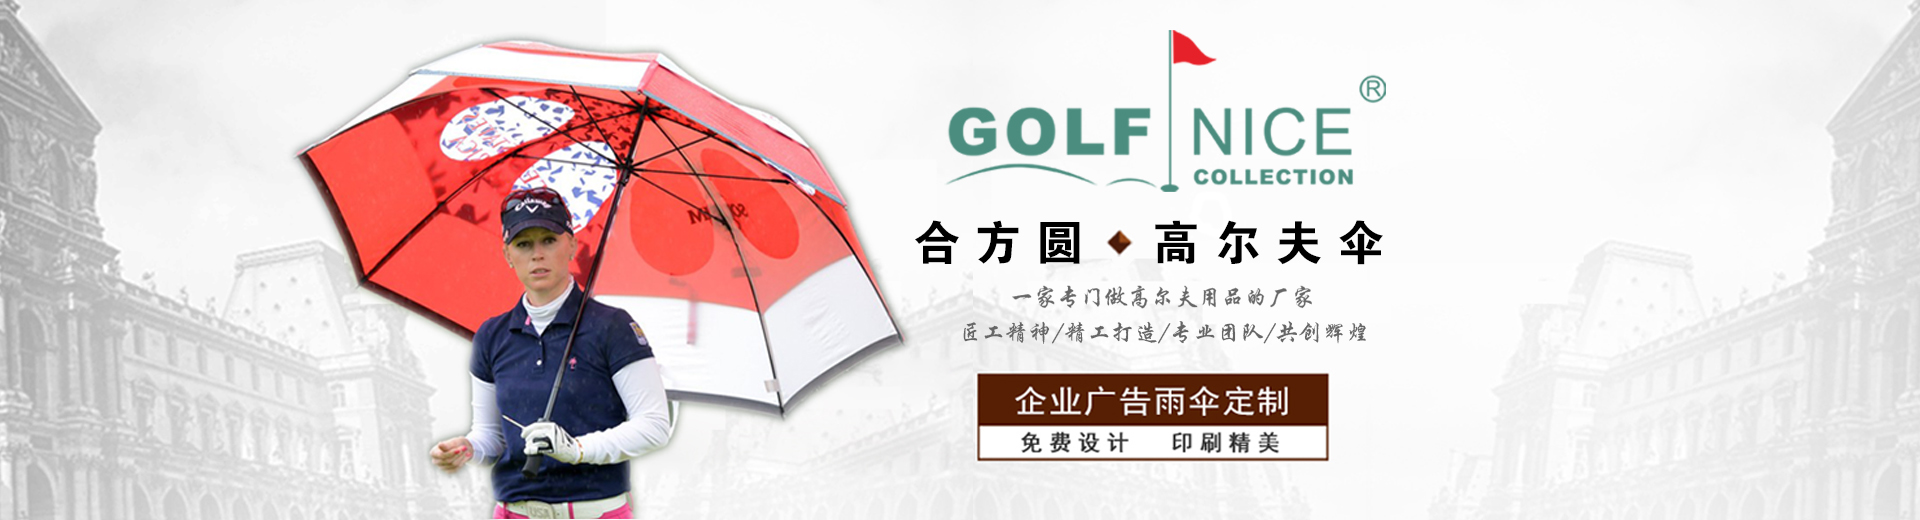 中国专业高尔夫用品定制商